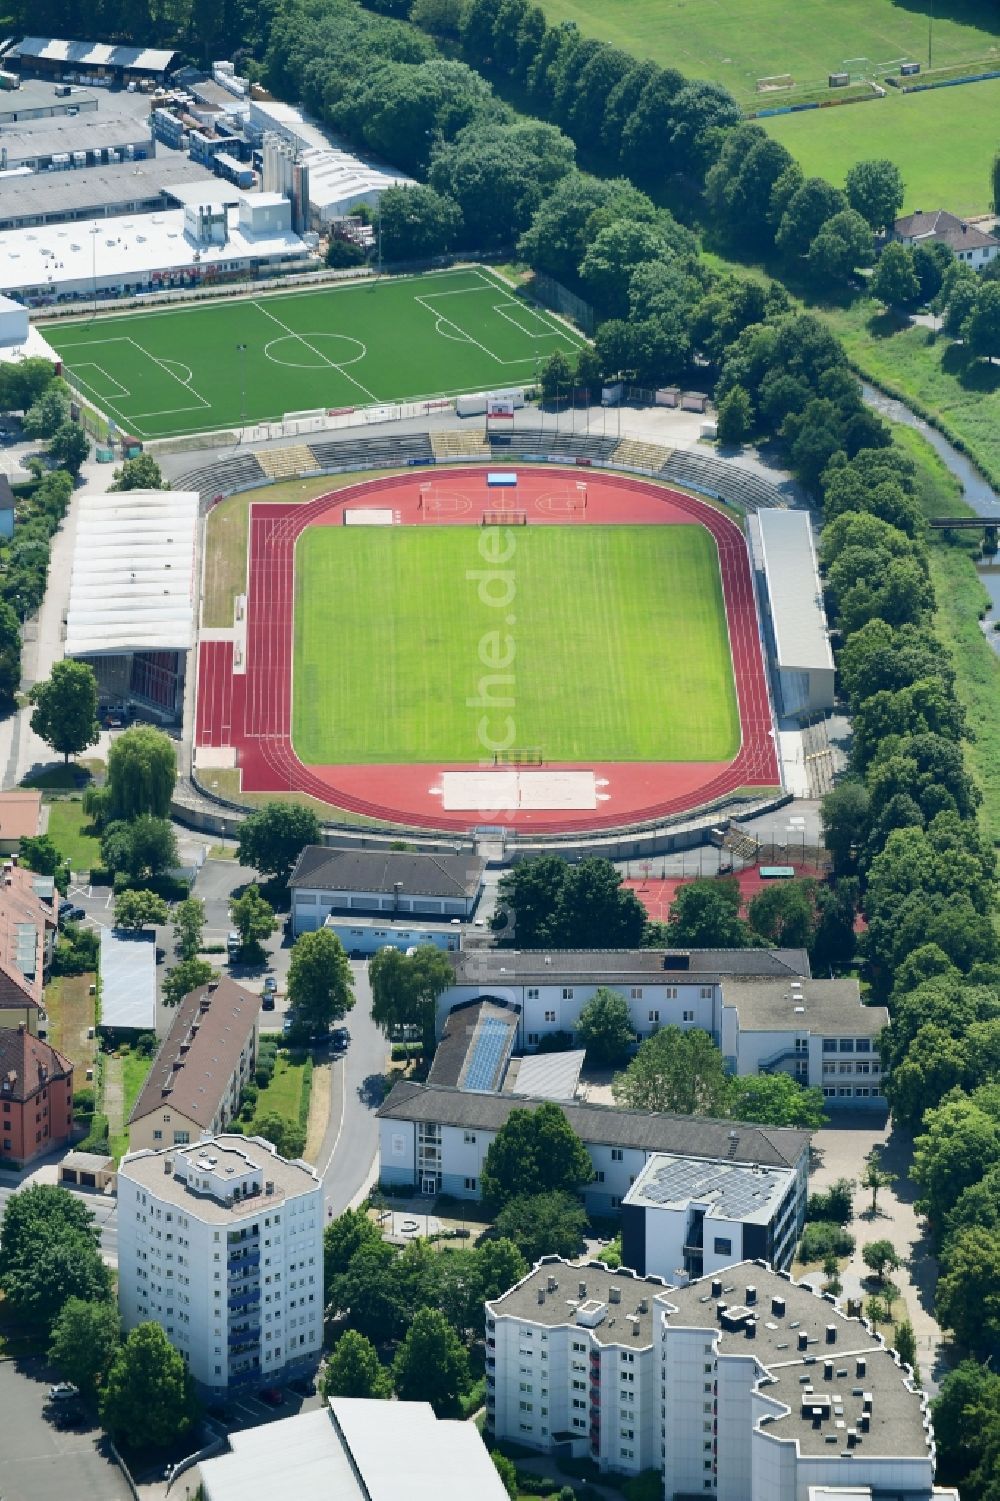 Bayreuth von oben - Sportstätten-Gelände des Stadion Hans-Walter-Wild-Stadion in Bayreuth im Bundesland Bayern, Deutschland